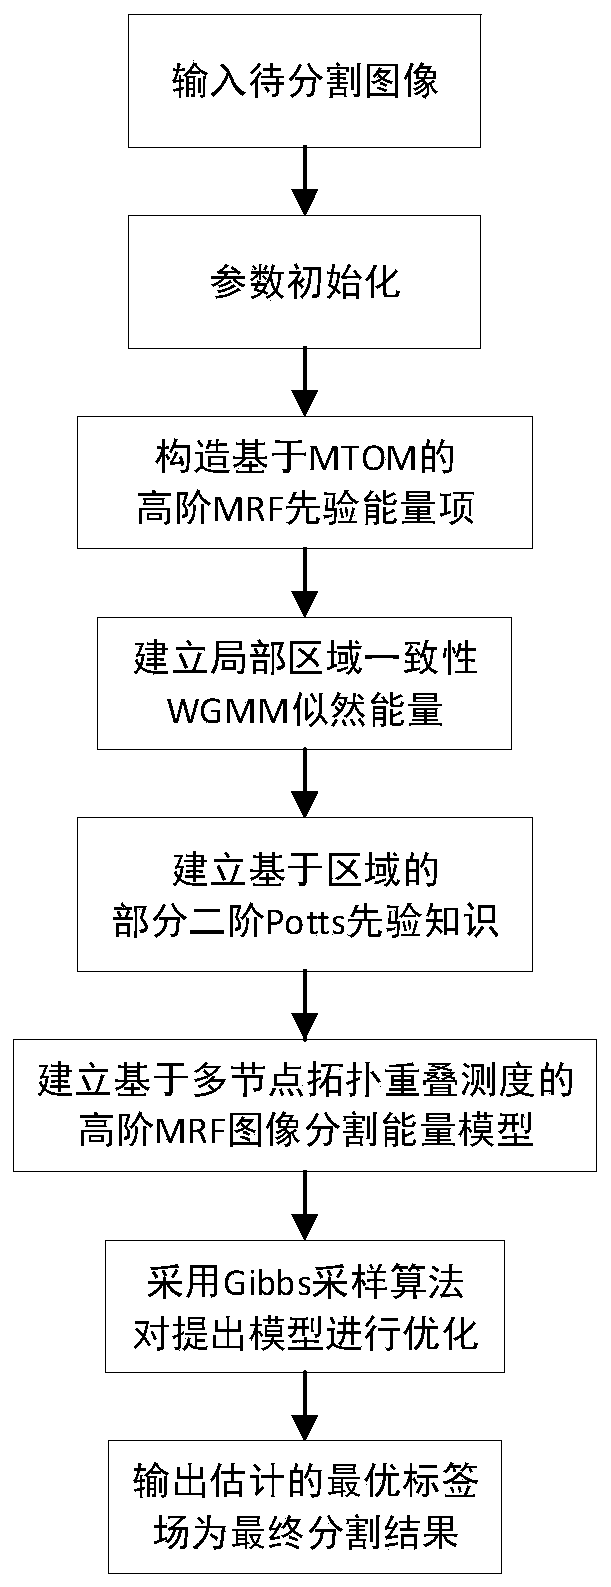 Image segmentation method of high-order MRF model based on multi-node topology overlapping measure